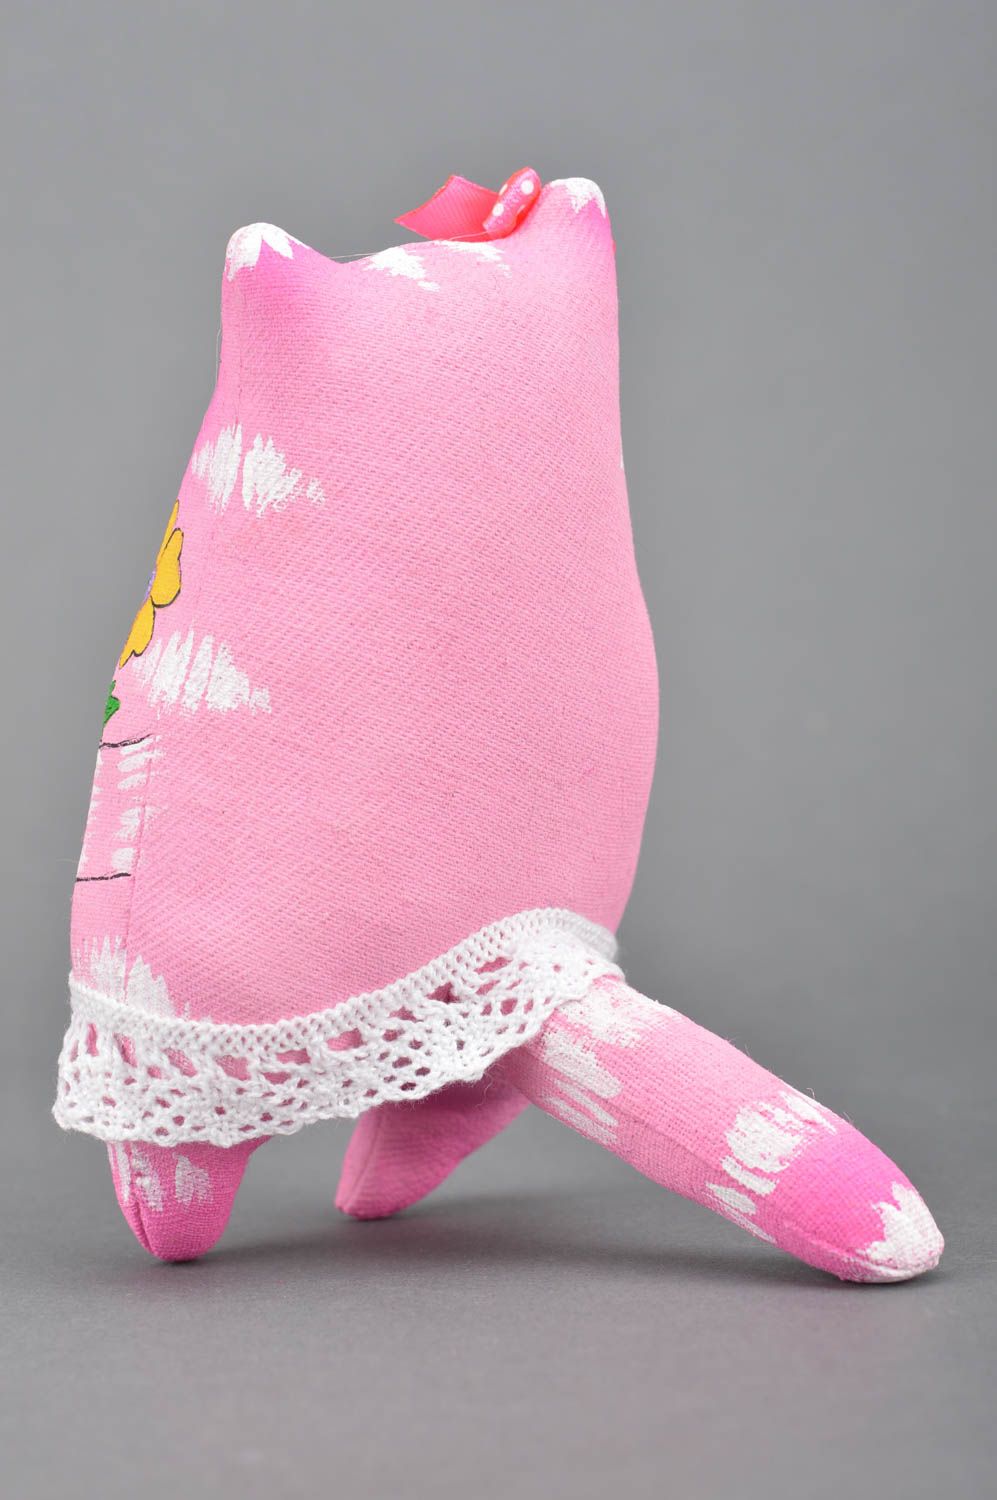 Ароматизированная игрушка в виде розового кота из хлопка ручной работы фото 5